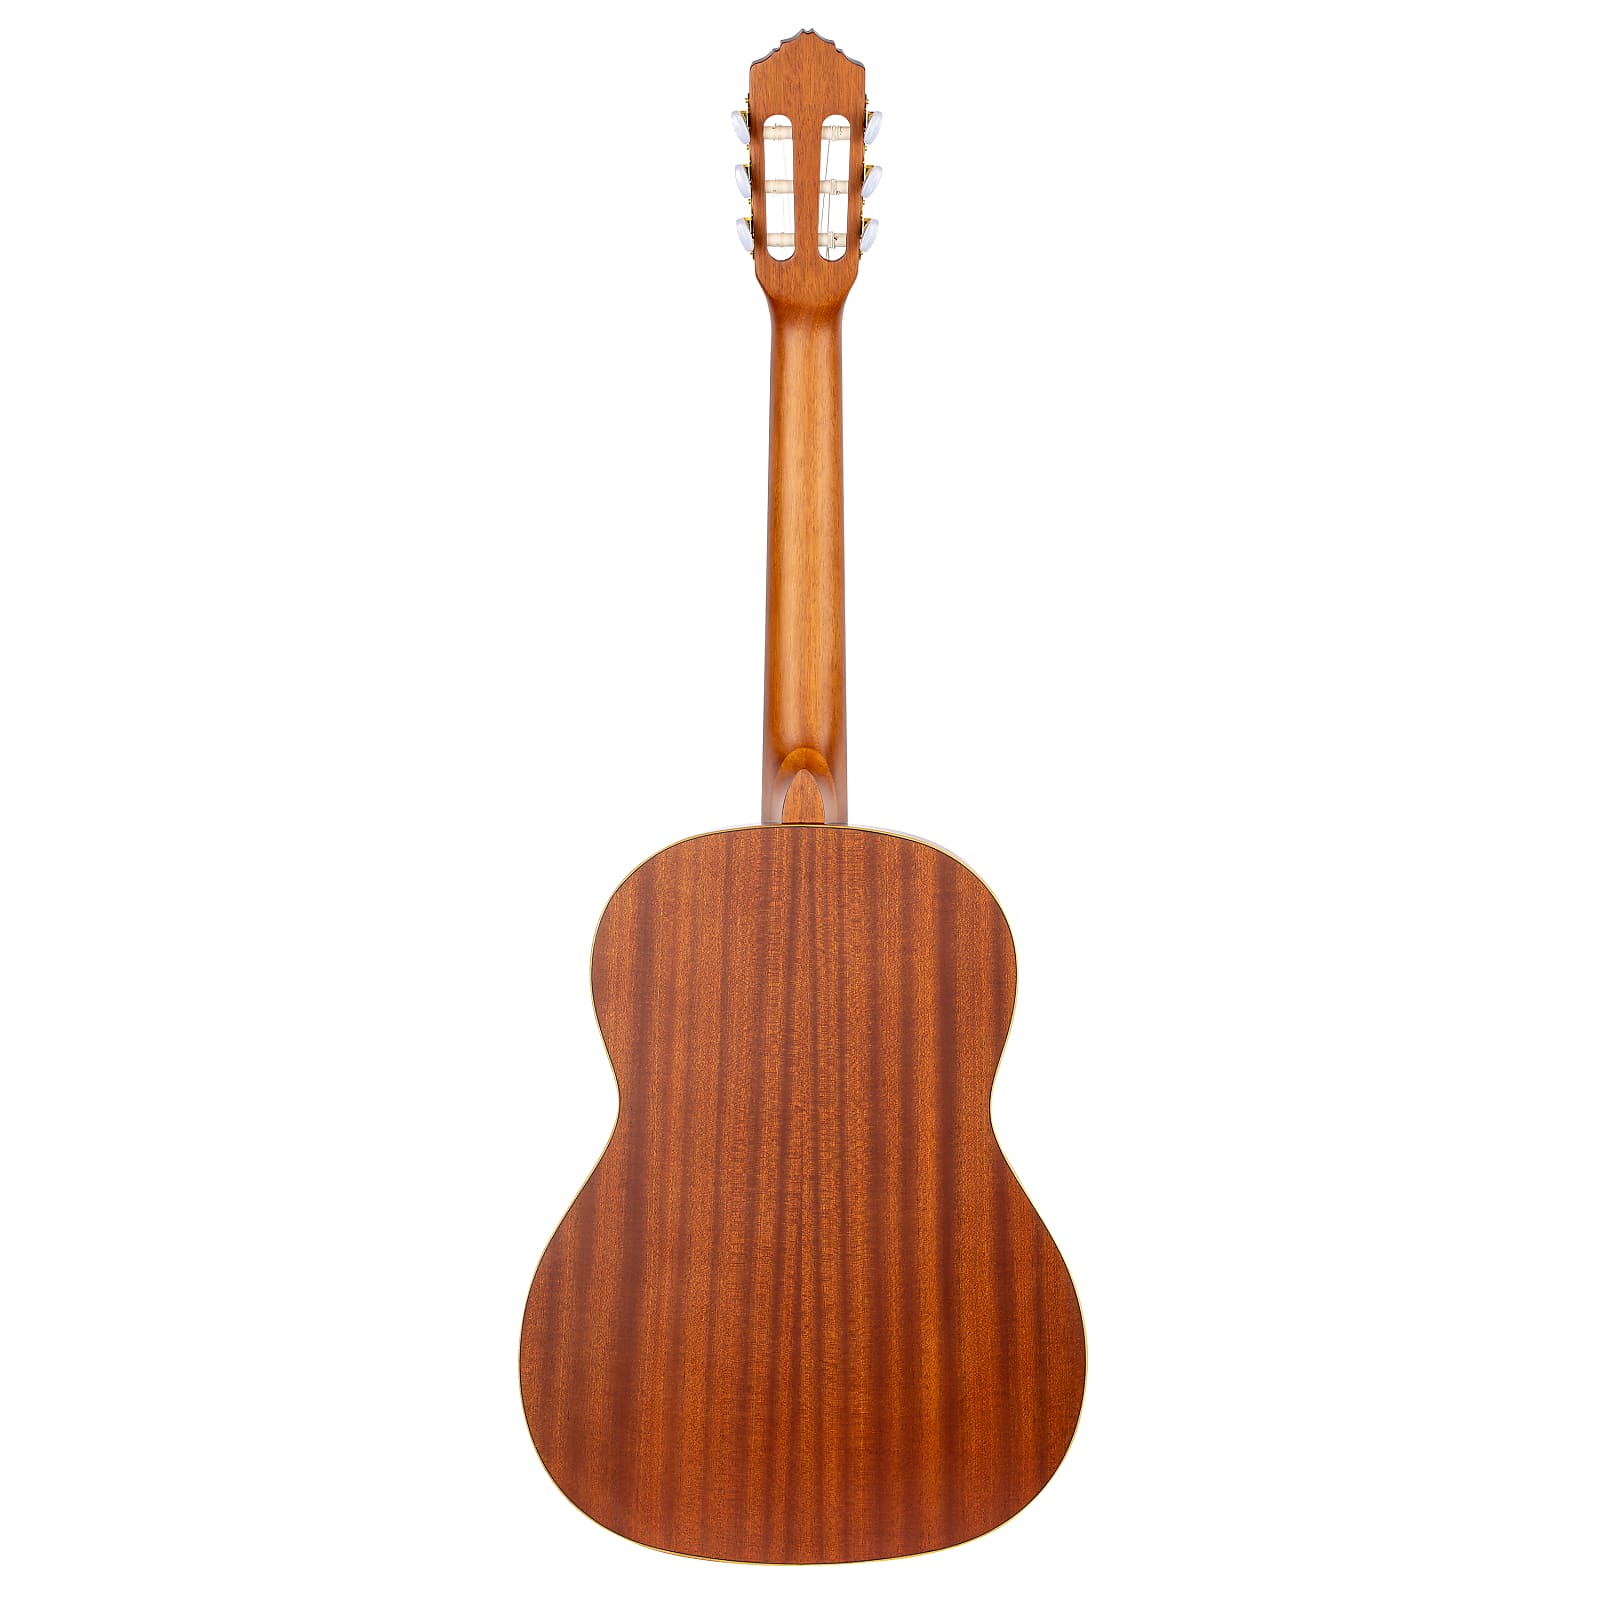 Ortega Family Pro Cedar Top Slim Neck Nylon String Acoustic Guitar R131SN w/Bag